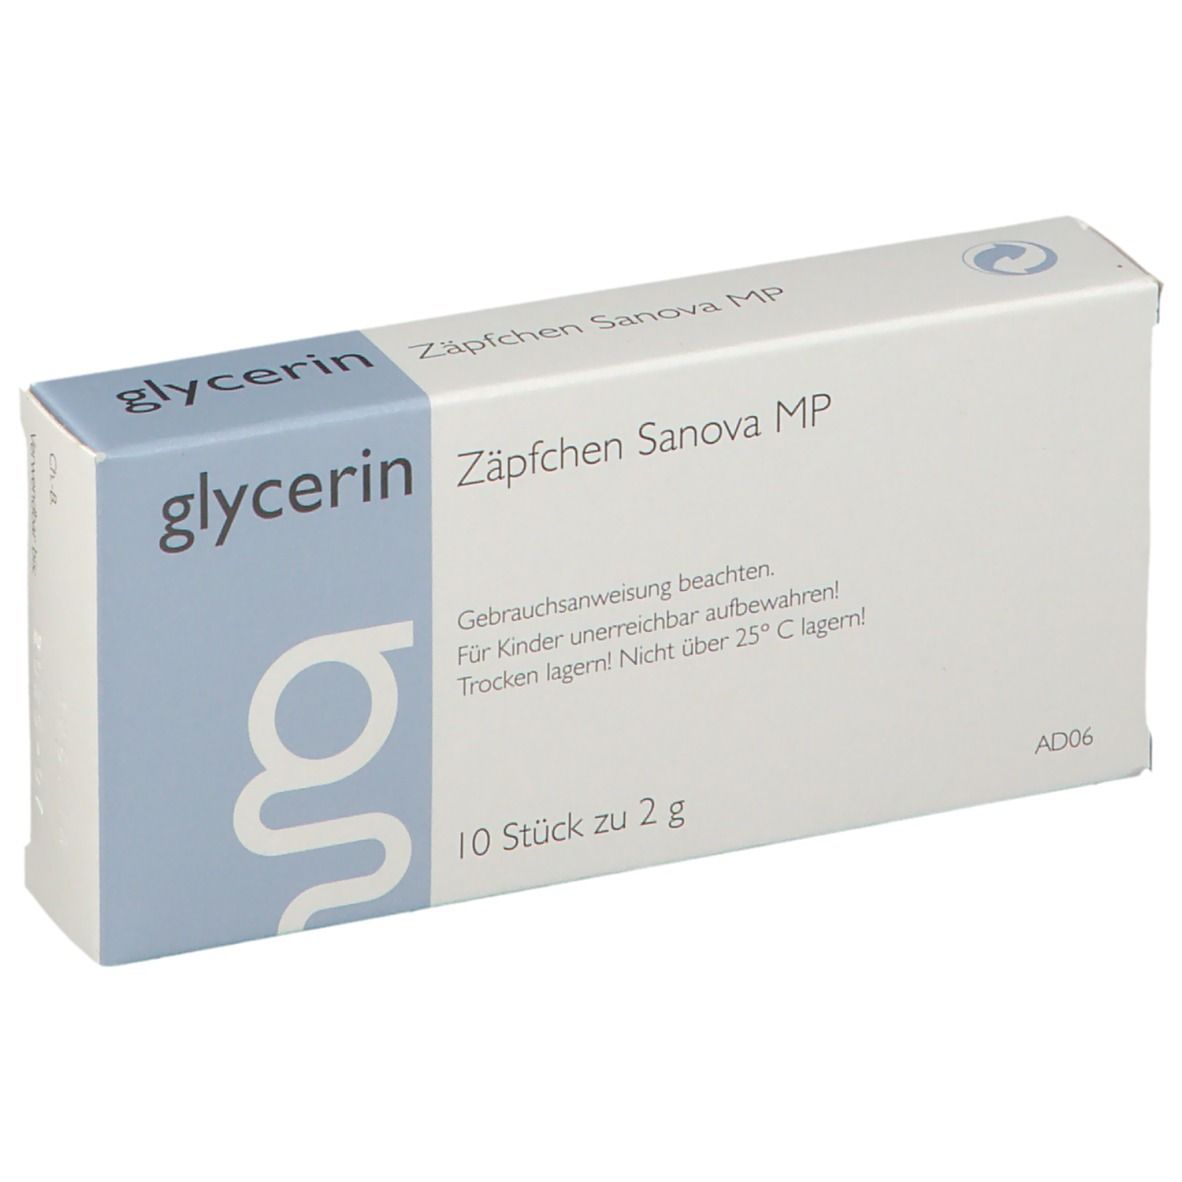 glycerin Zäpfchen Sanova MP 2 g